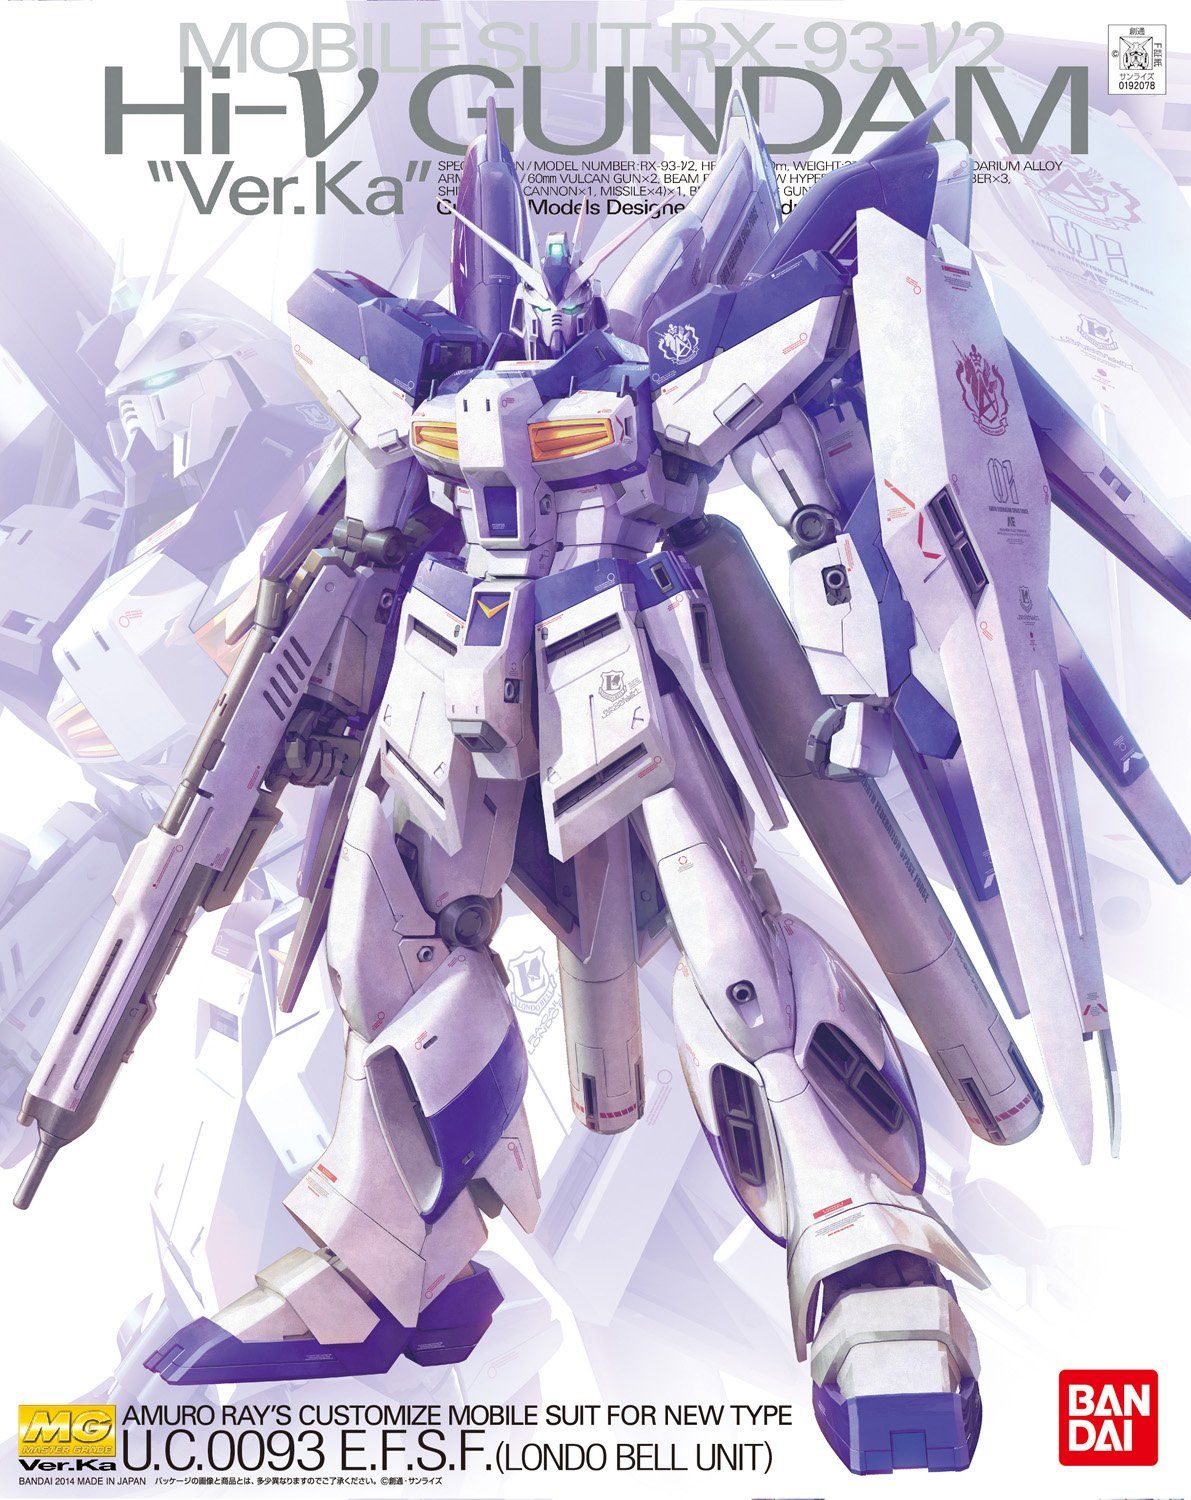 Bandai 1/100 Scale MG Rx-93-v2 Hi Nu Gundam Ver.Ka Model Kit